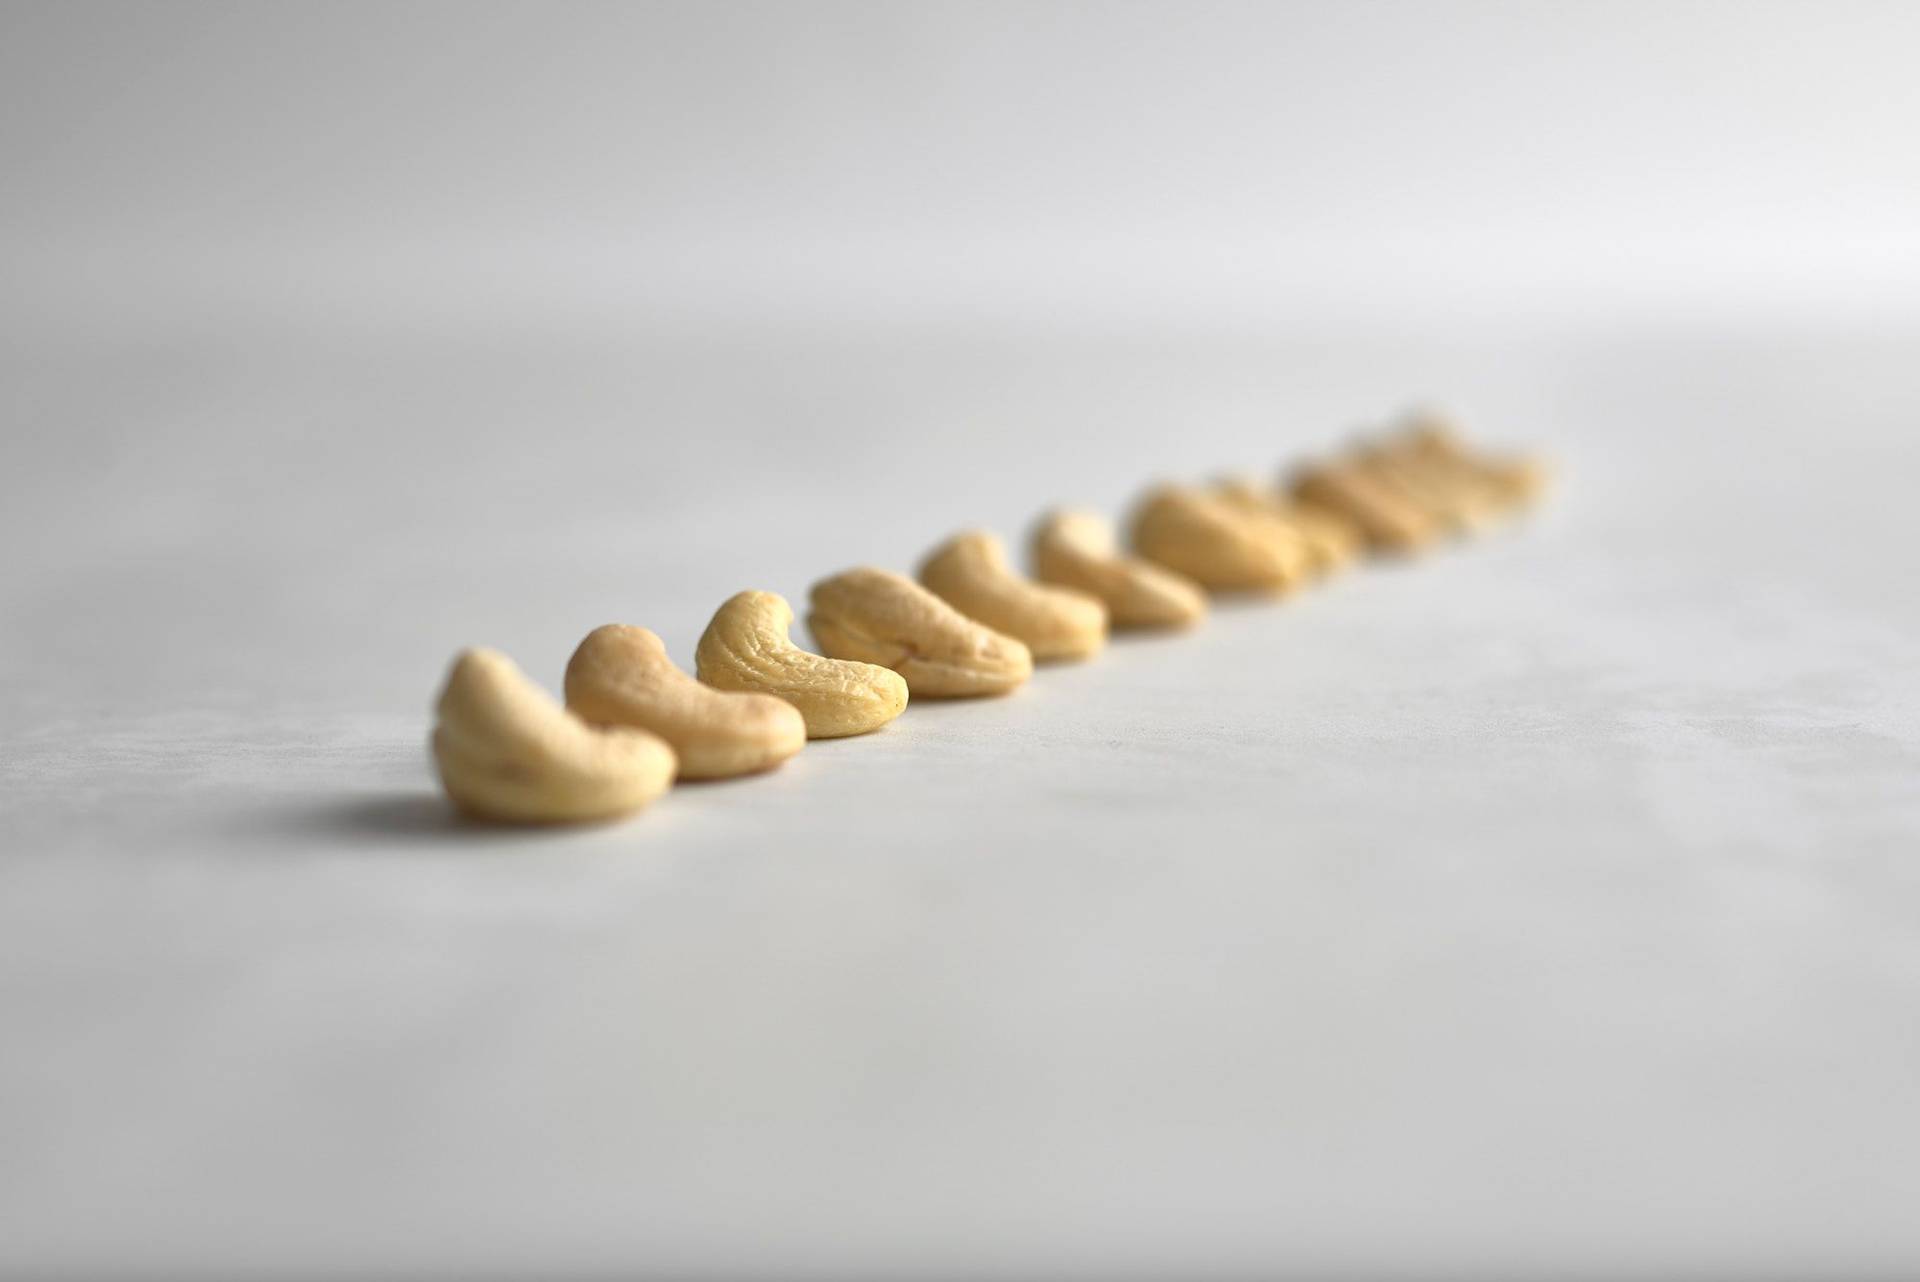 cashew nüsse in einer reihe auf einem weißen sapienstone top